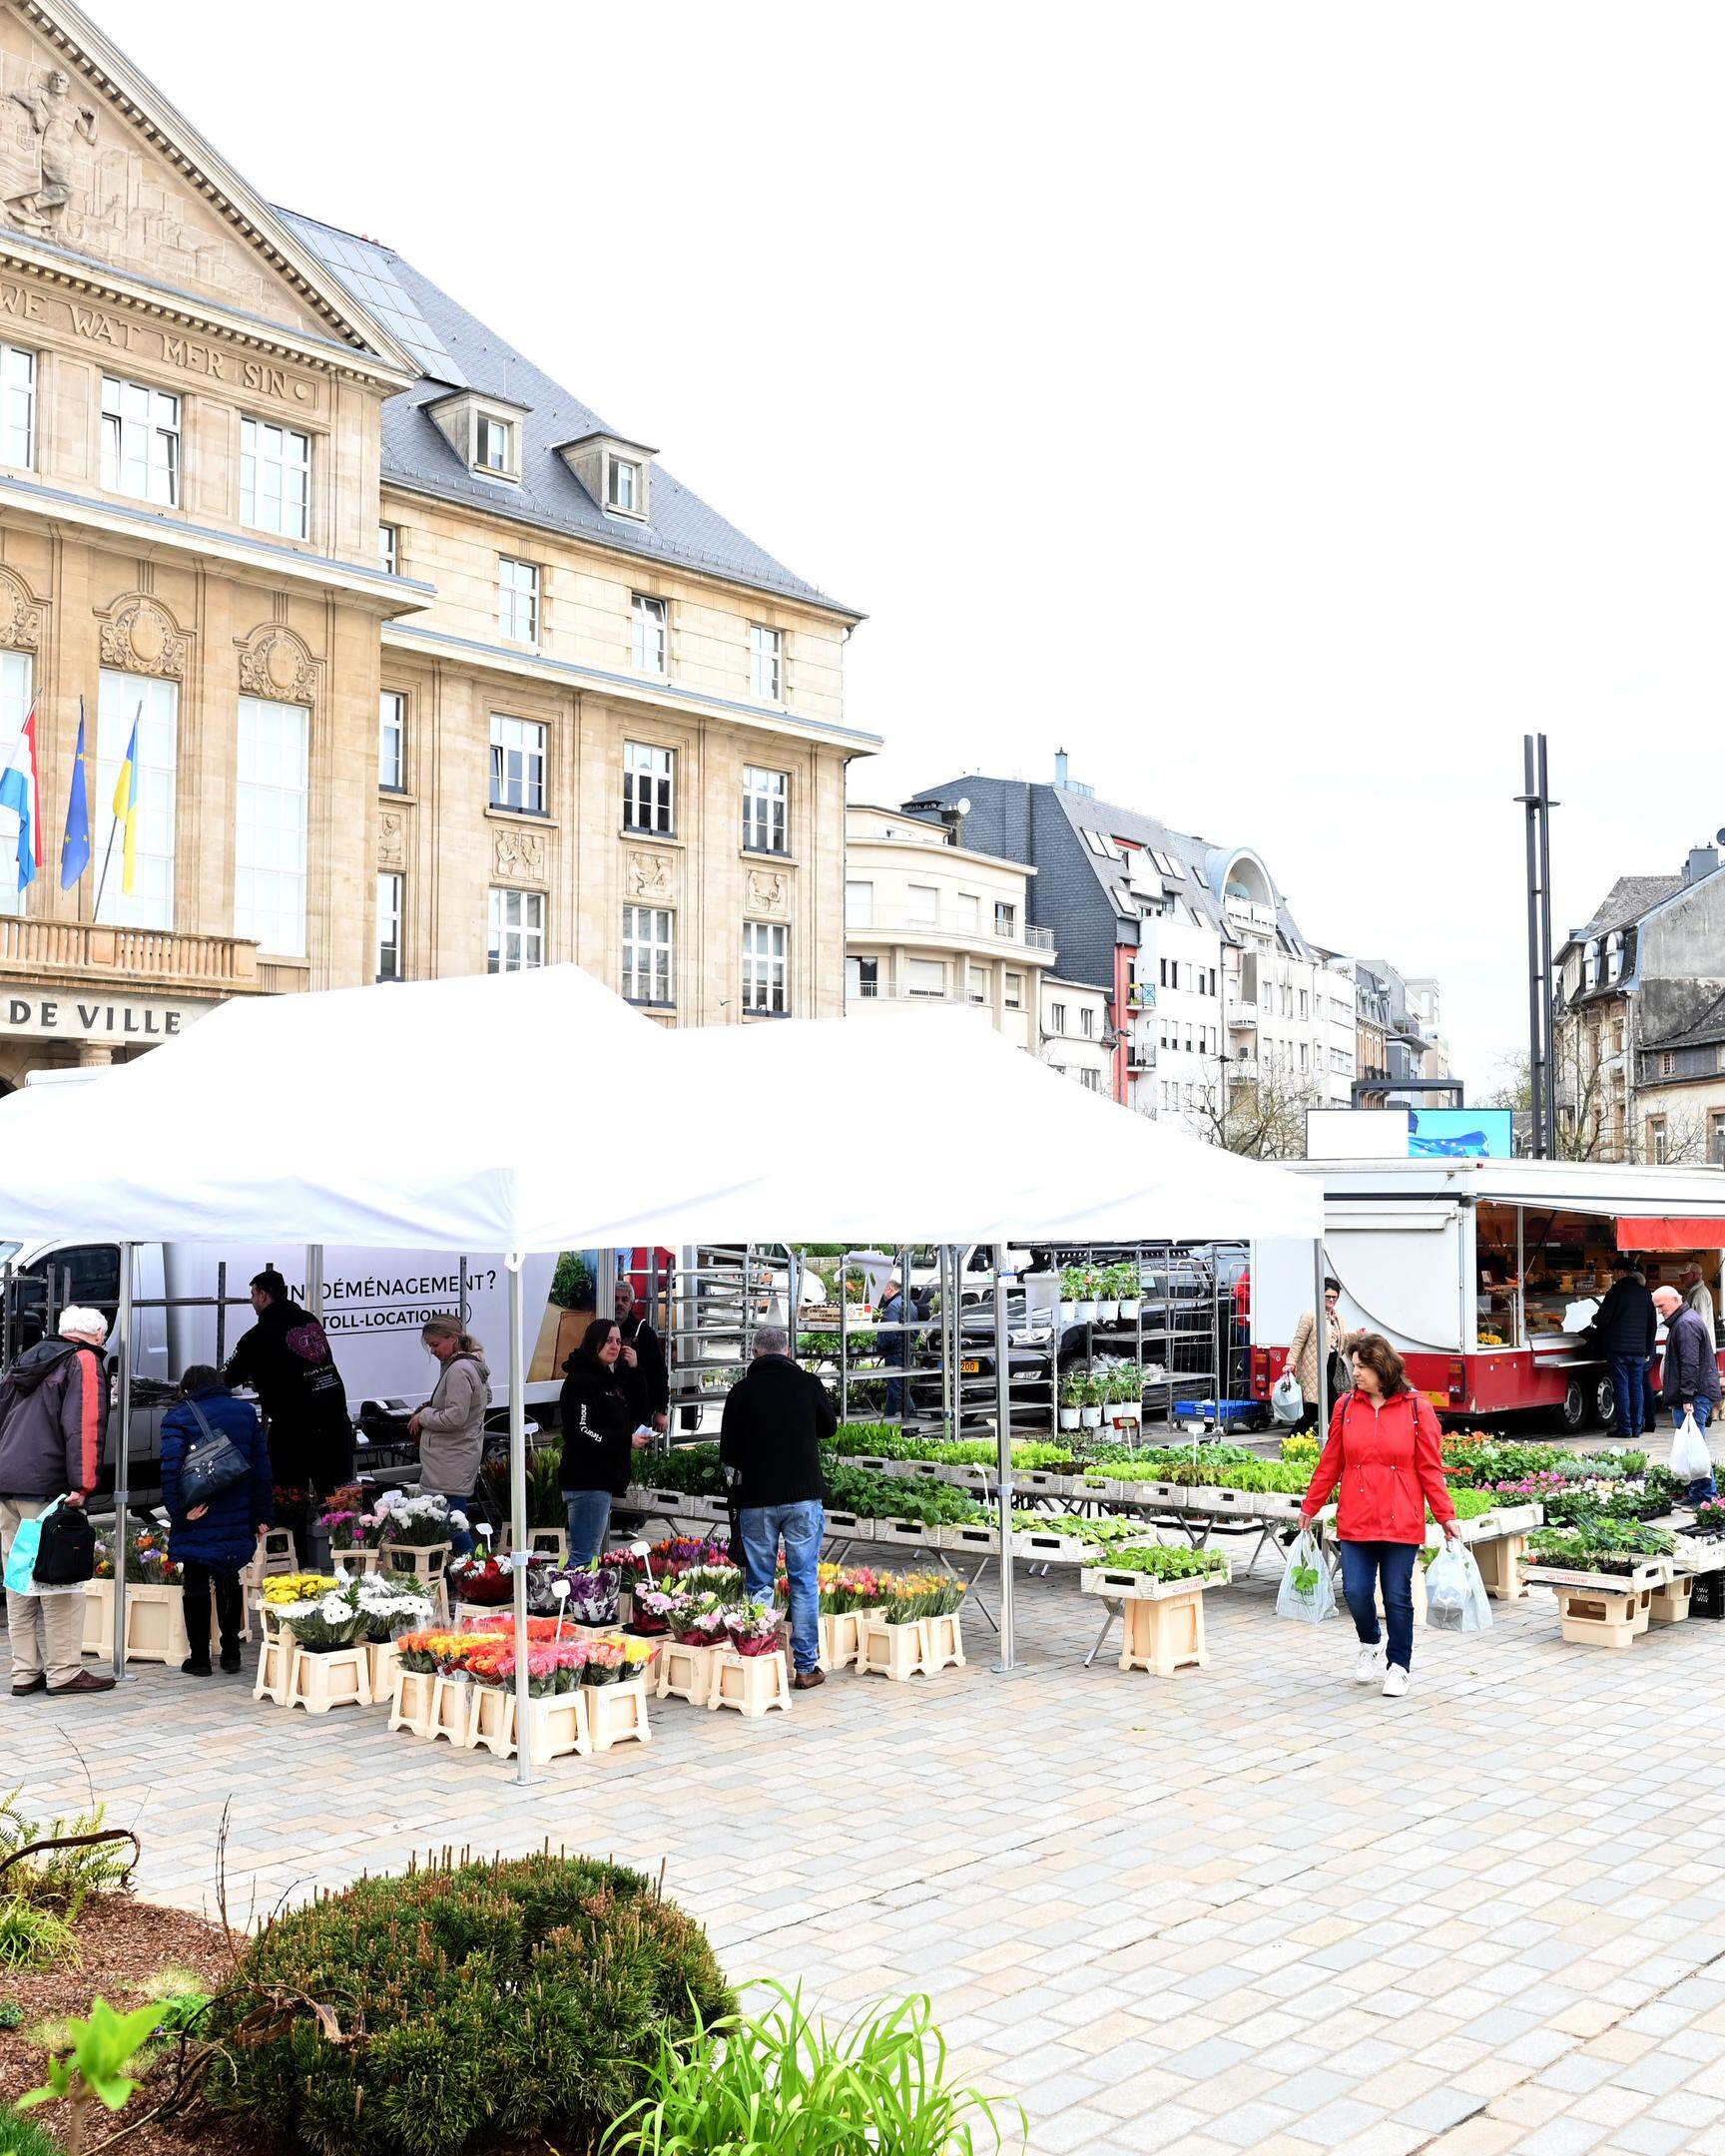 In letzter Zeit fand der Wochenmarkt kirmesbedingt, nicht allzu oft, wie hier auf diesem Archivbild zu sehen, auf dem Rathausplatz statt. 